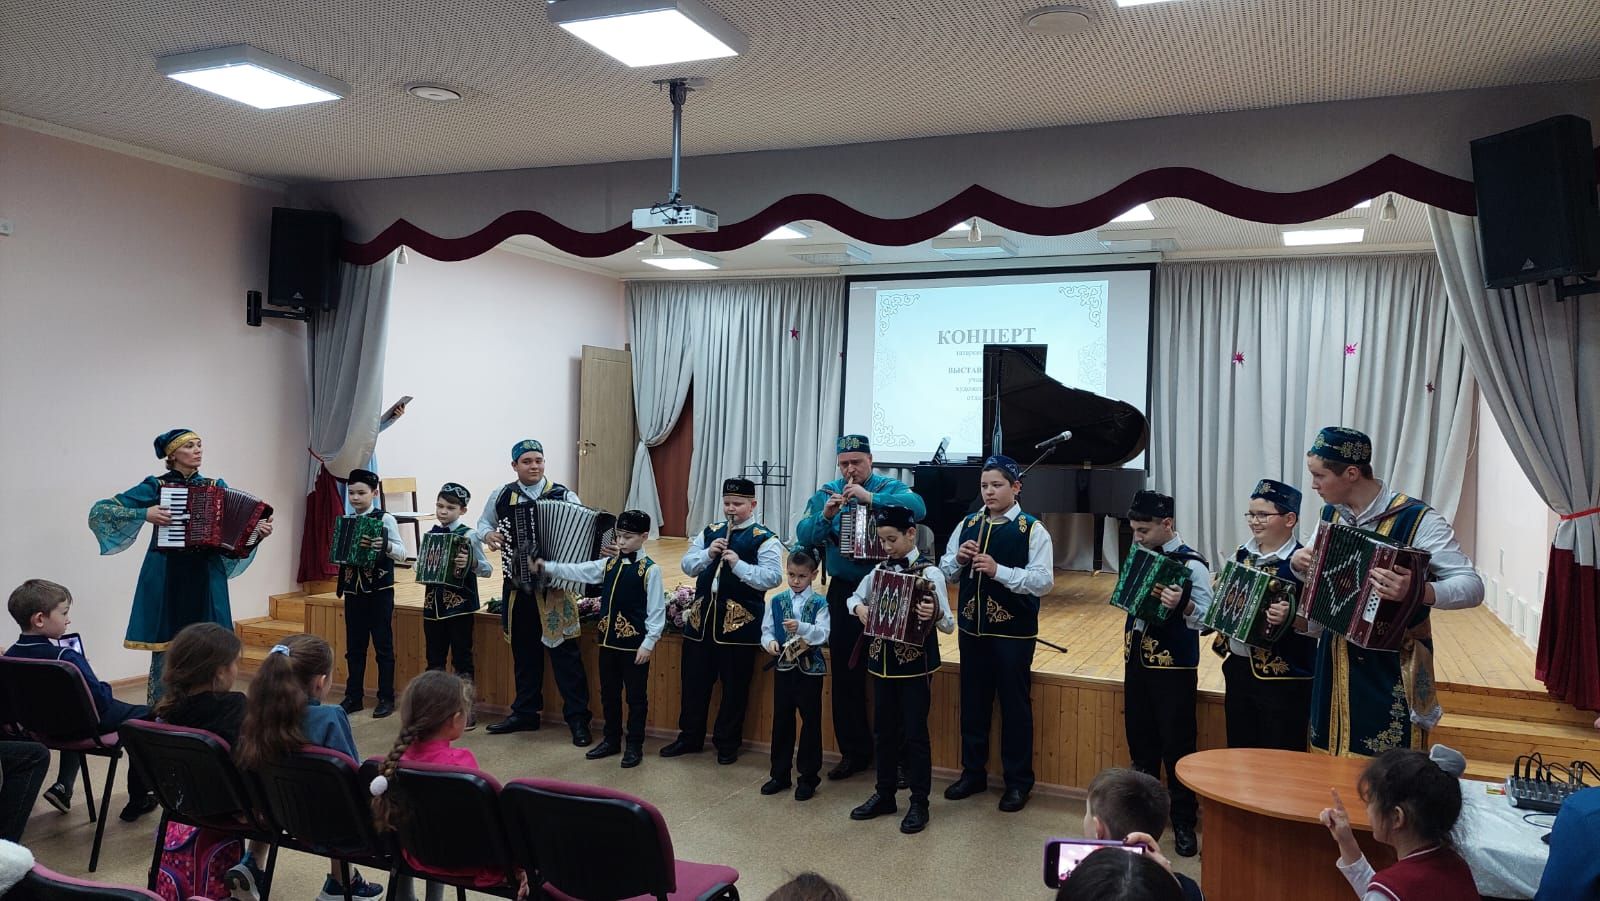 В Верхнем Услоне прошел концерт татарской музыки